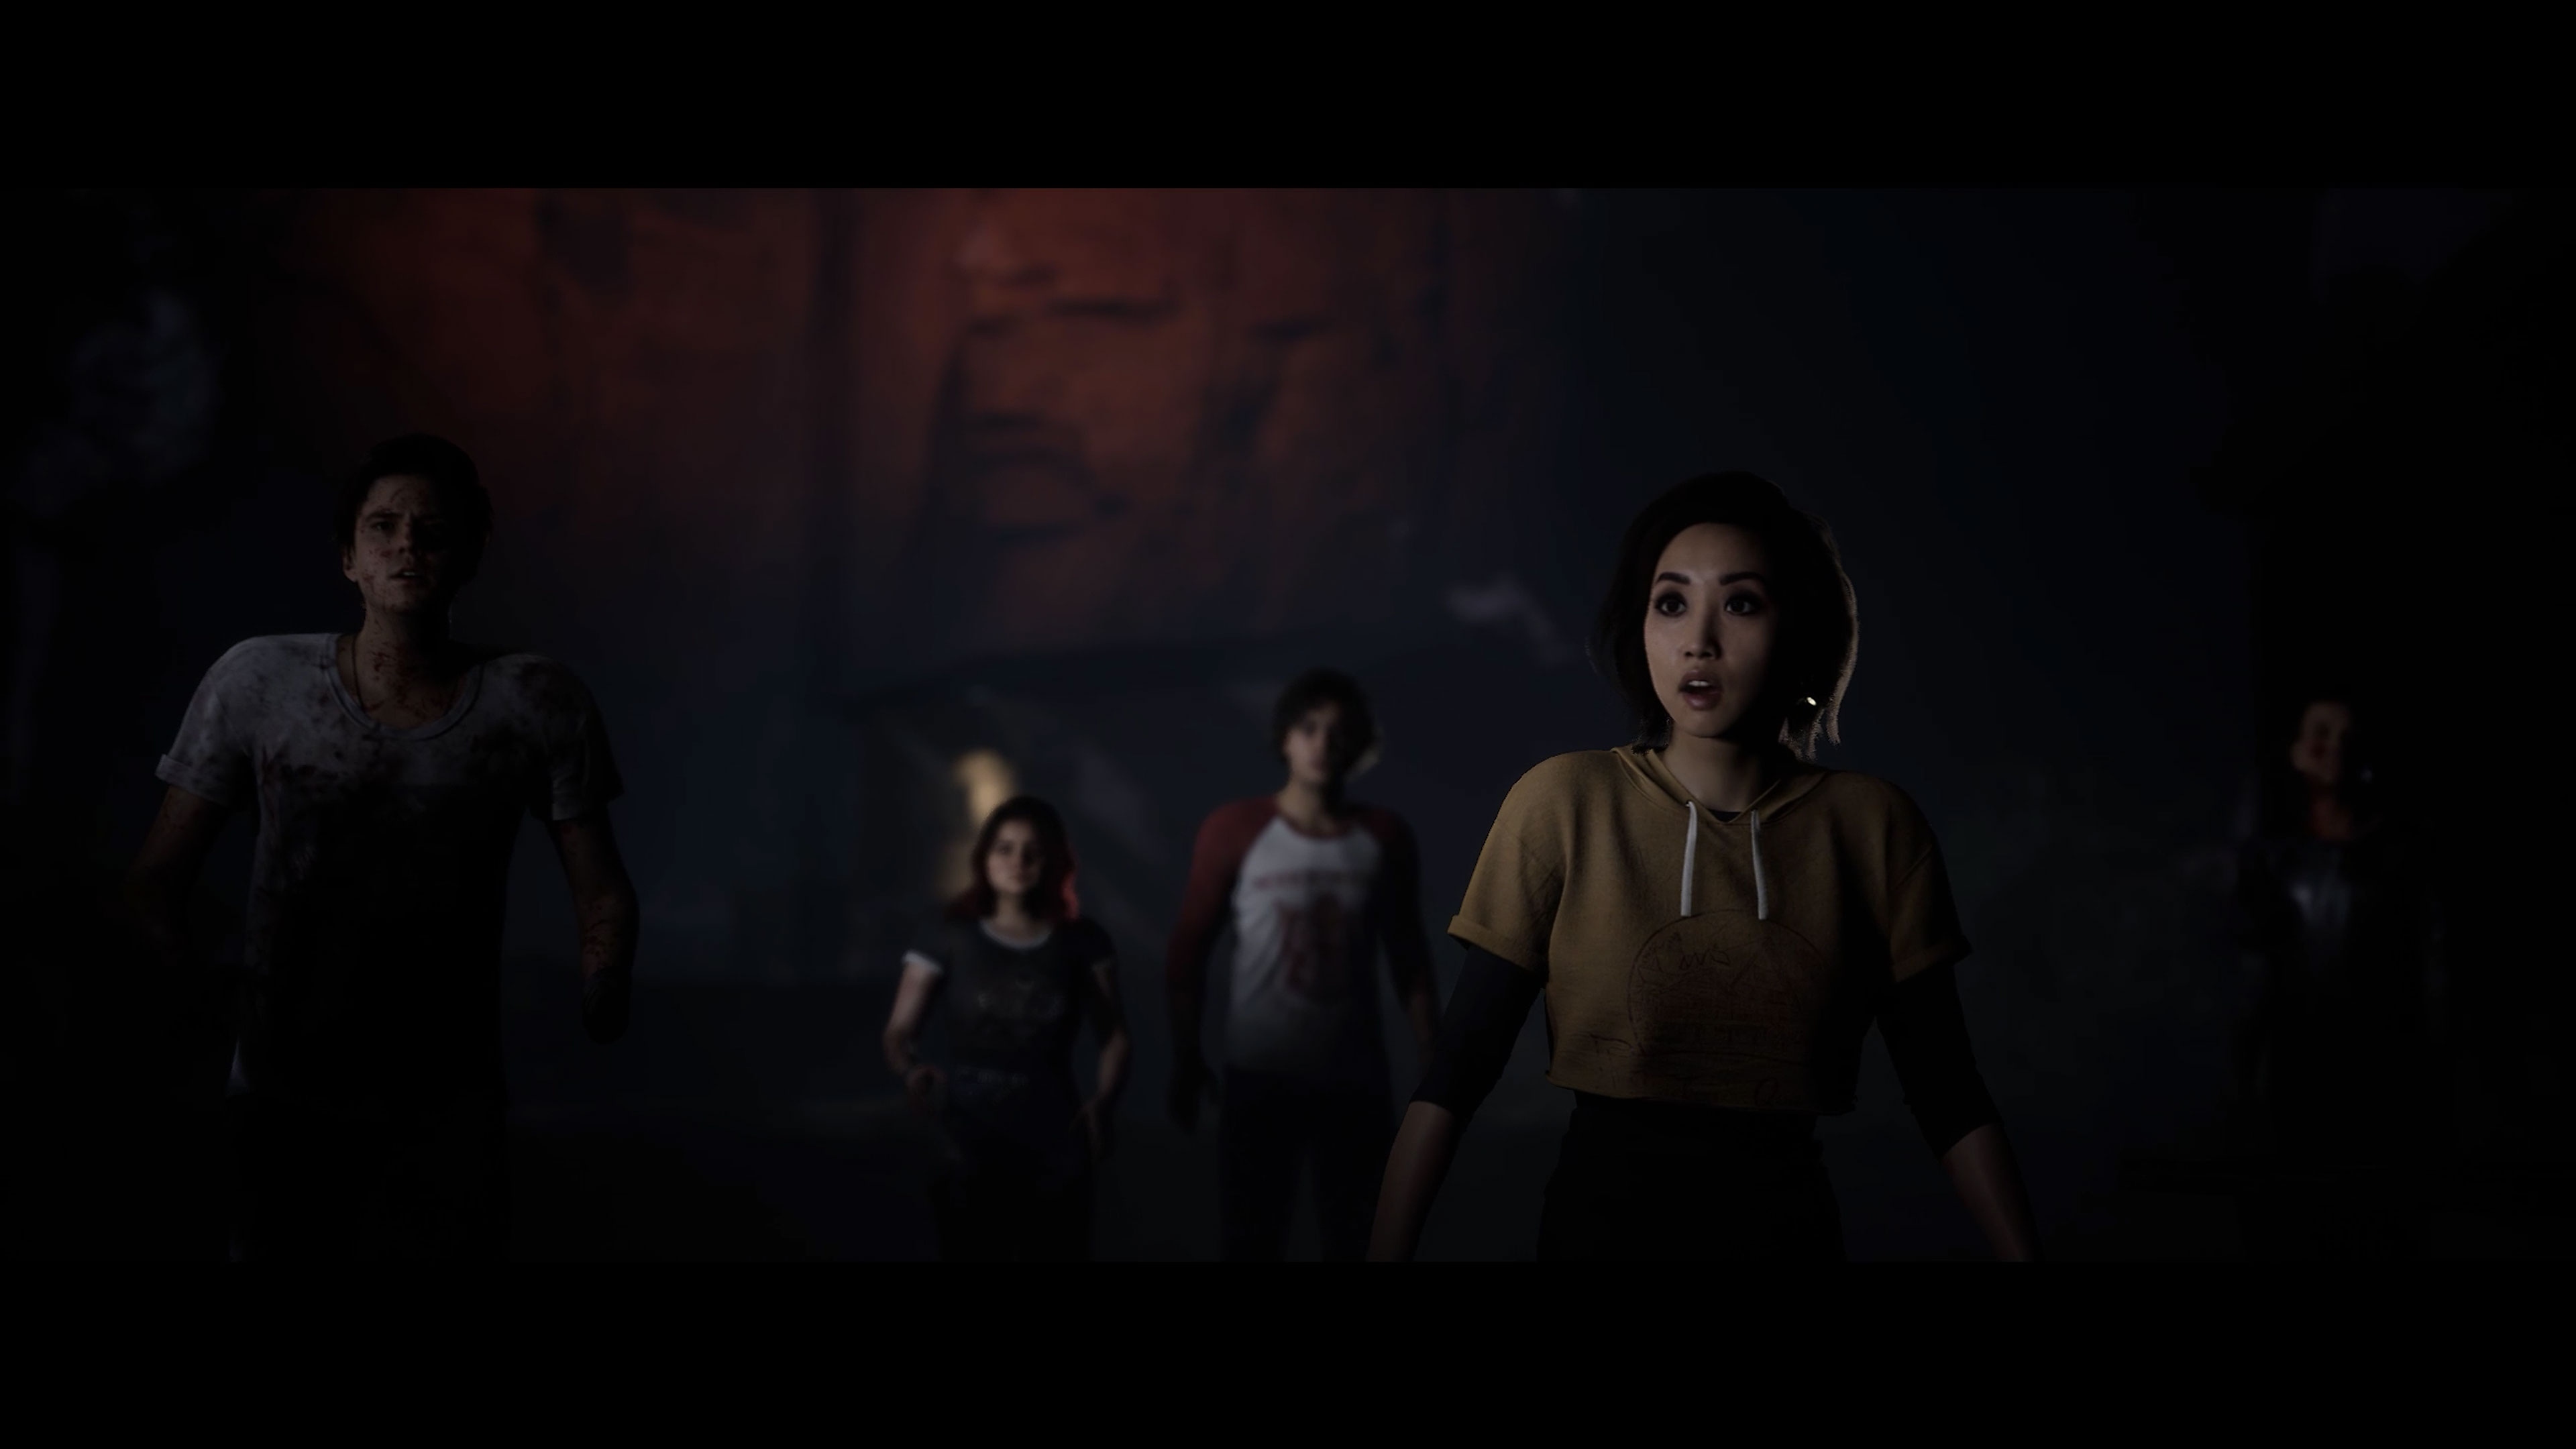 Captura de pantalla de The Quarry mostrando a un grupo de personajes